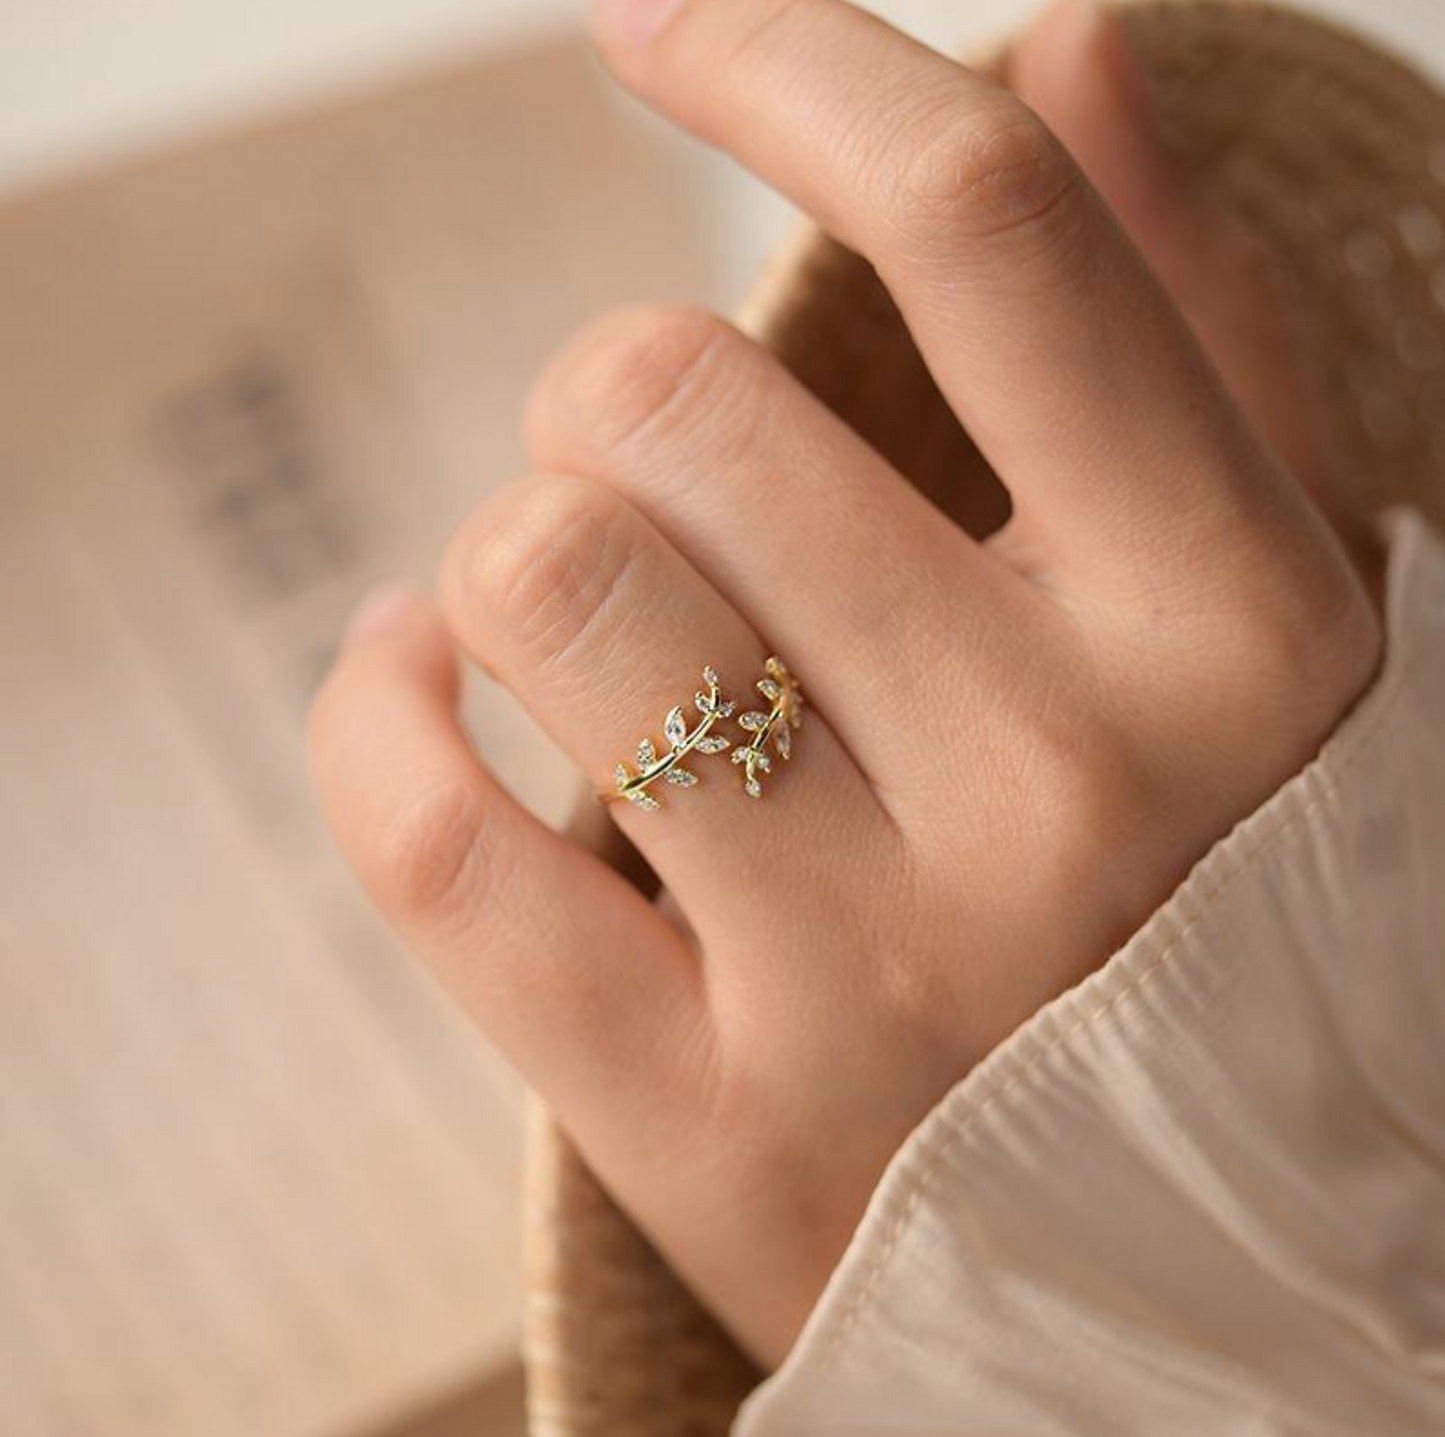 Léa Gold Ring